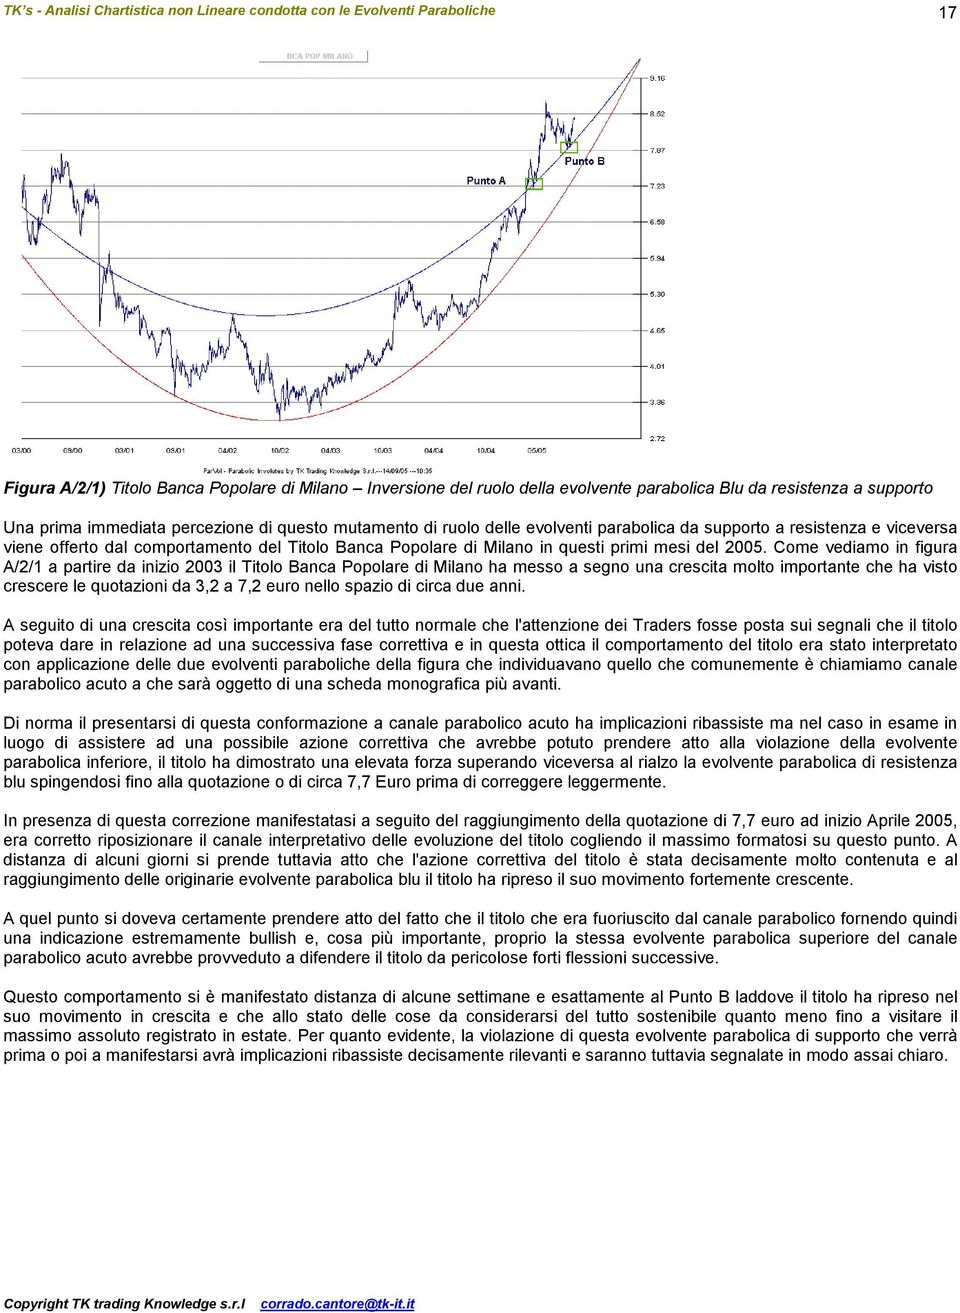 Come vediamo in figura A/2/1 a partire da inizio 2003 il Titolo Banca Popolare di Milano ha messo a segno una crescita molto importante che ha visto crescere le quotazioni da 3,2 a 7,2 euro nello